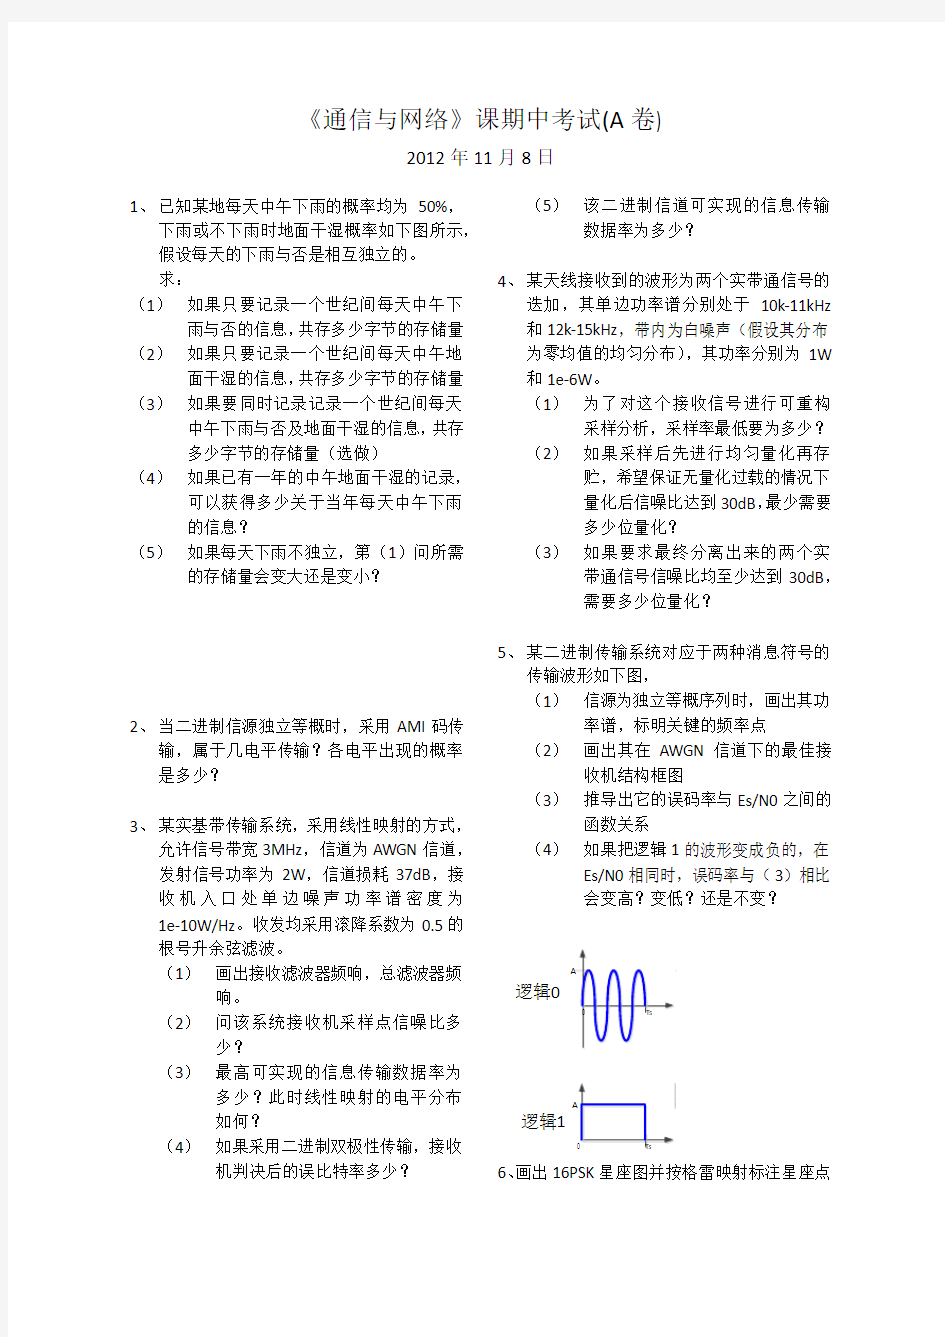 清华大学 通信与网络 2012年期中考试试卷 完全版